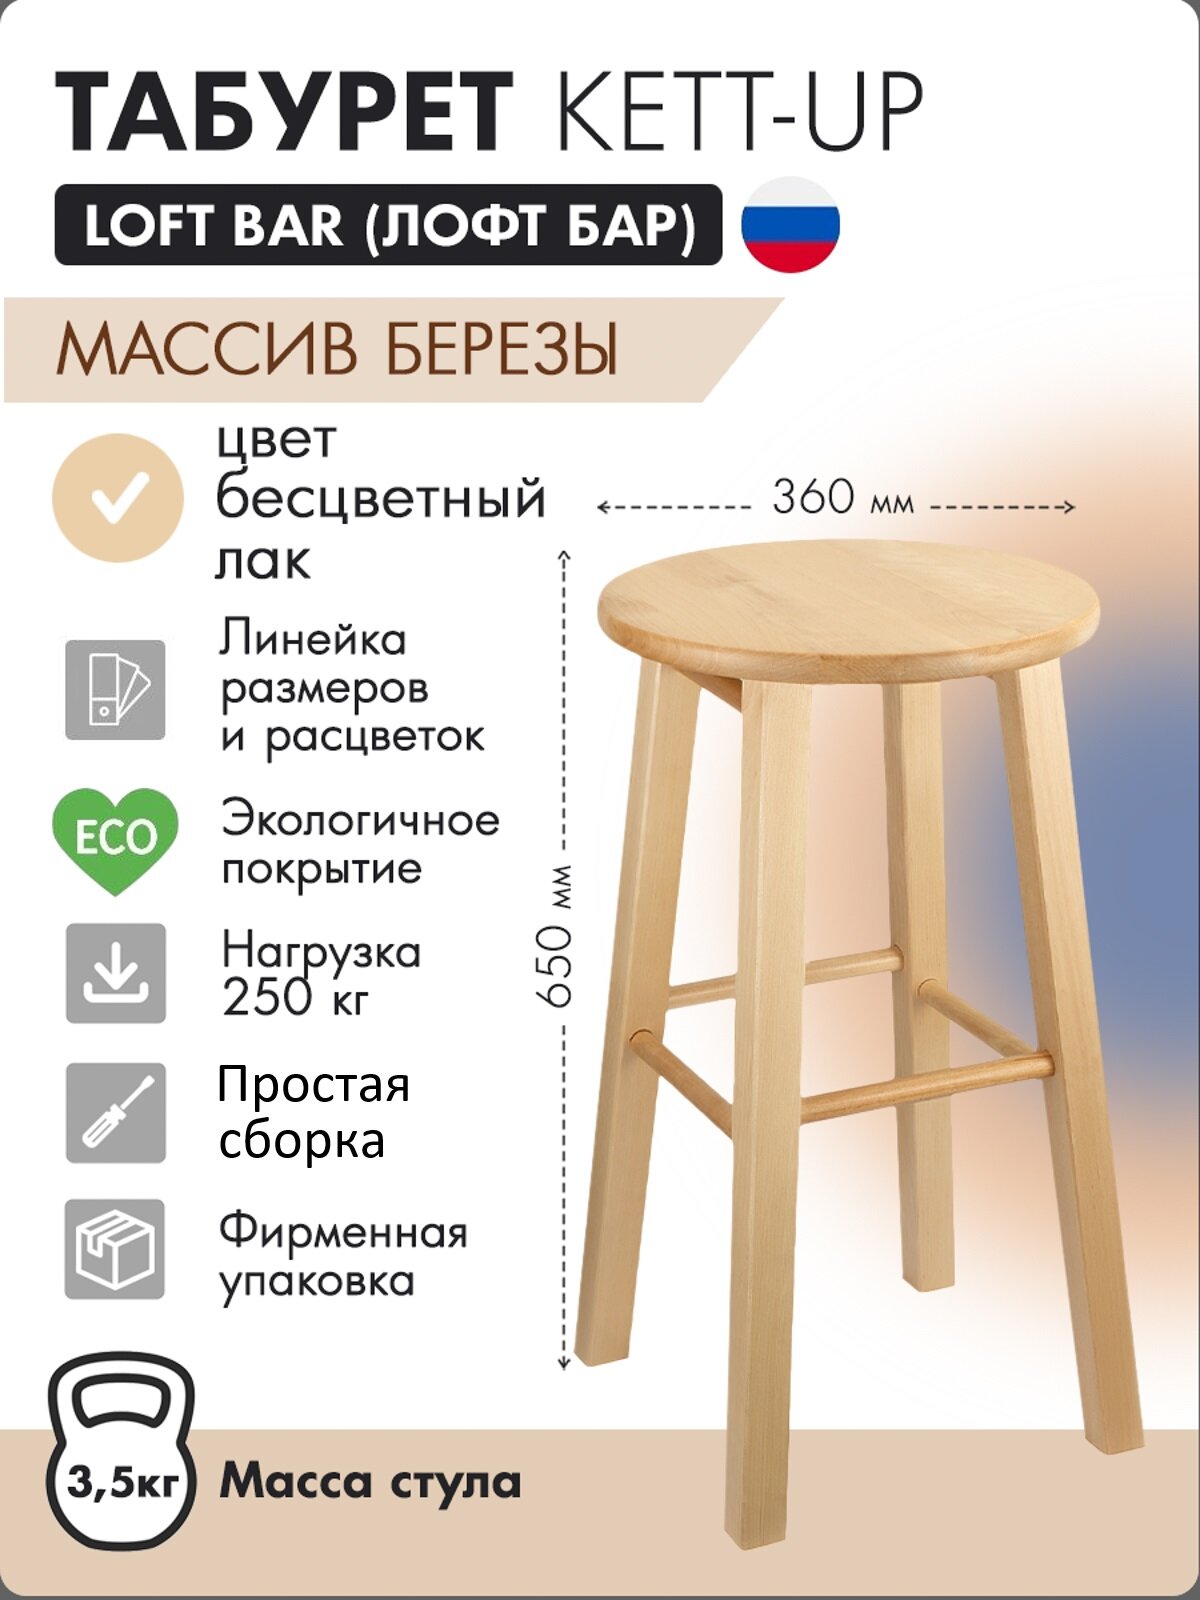 Табурет KETT-UP LOFT BAR барный, деревянный KU085.2, сиденье круглое, лак, цвет натуральный, 1 штука